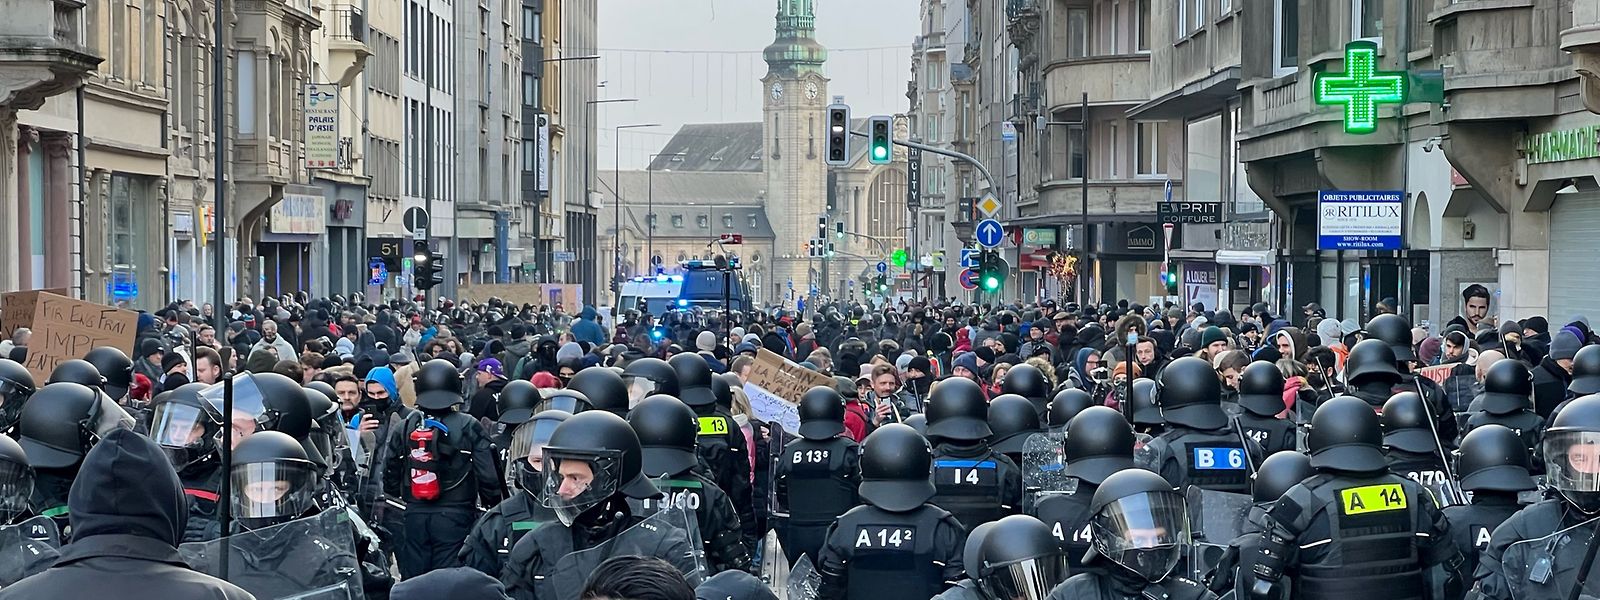 Imagem da manifestação contra a lei covid que decorre esta tarde no Luxemburgo.